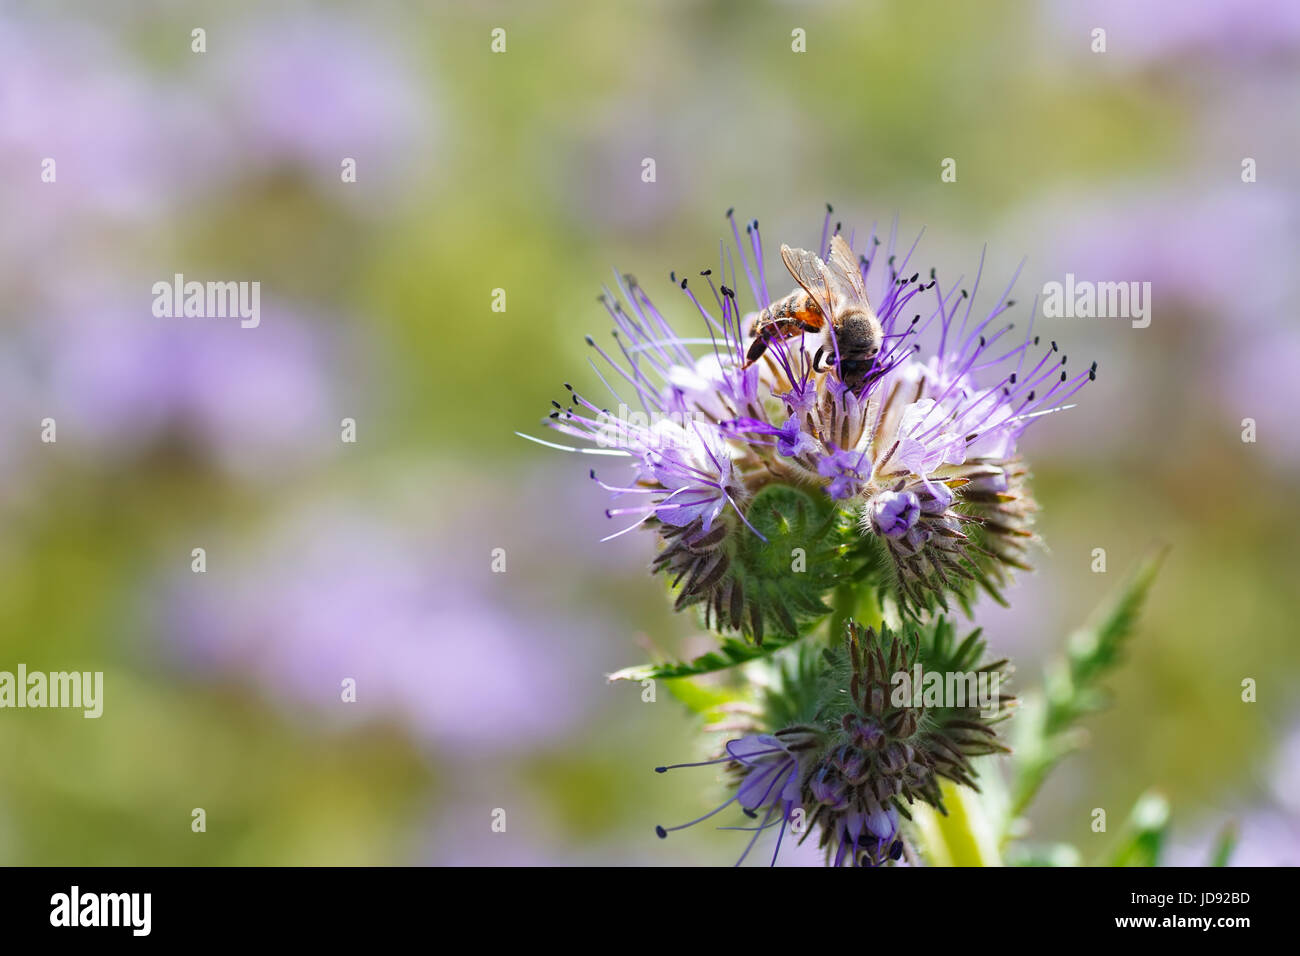 Biene auf Blüte. Makro-Fotografie. Blume der Phacelia Tanacetifolia oder violett Rainfarn mit Biene Closeup. Honig-Anlage. Biene sammelt Nektar Stockfoto